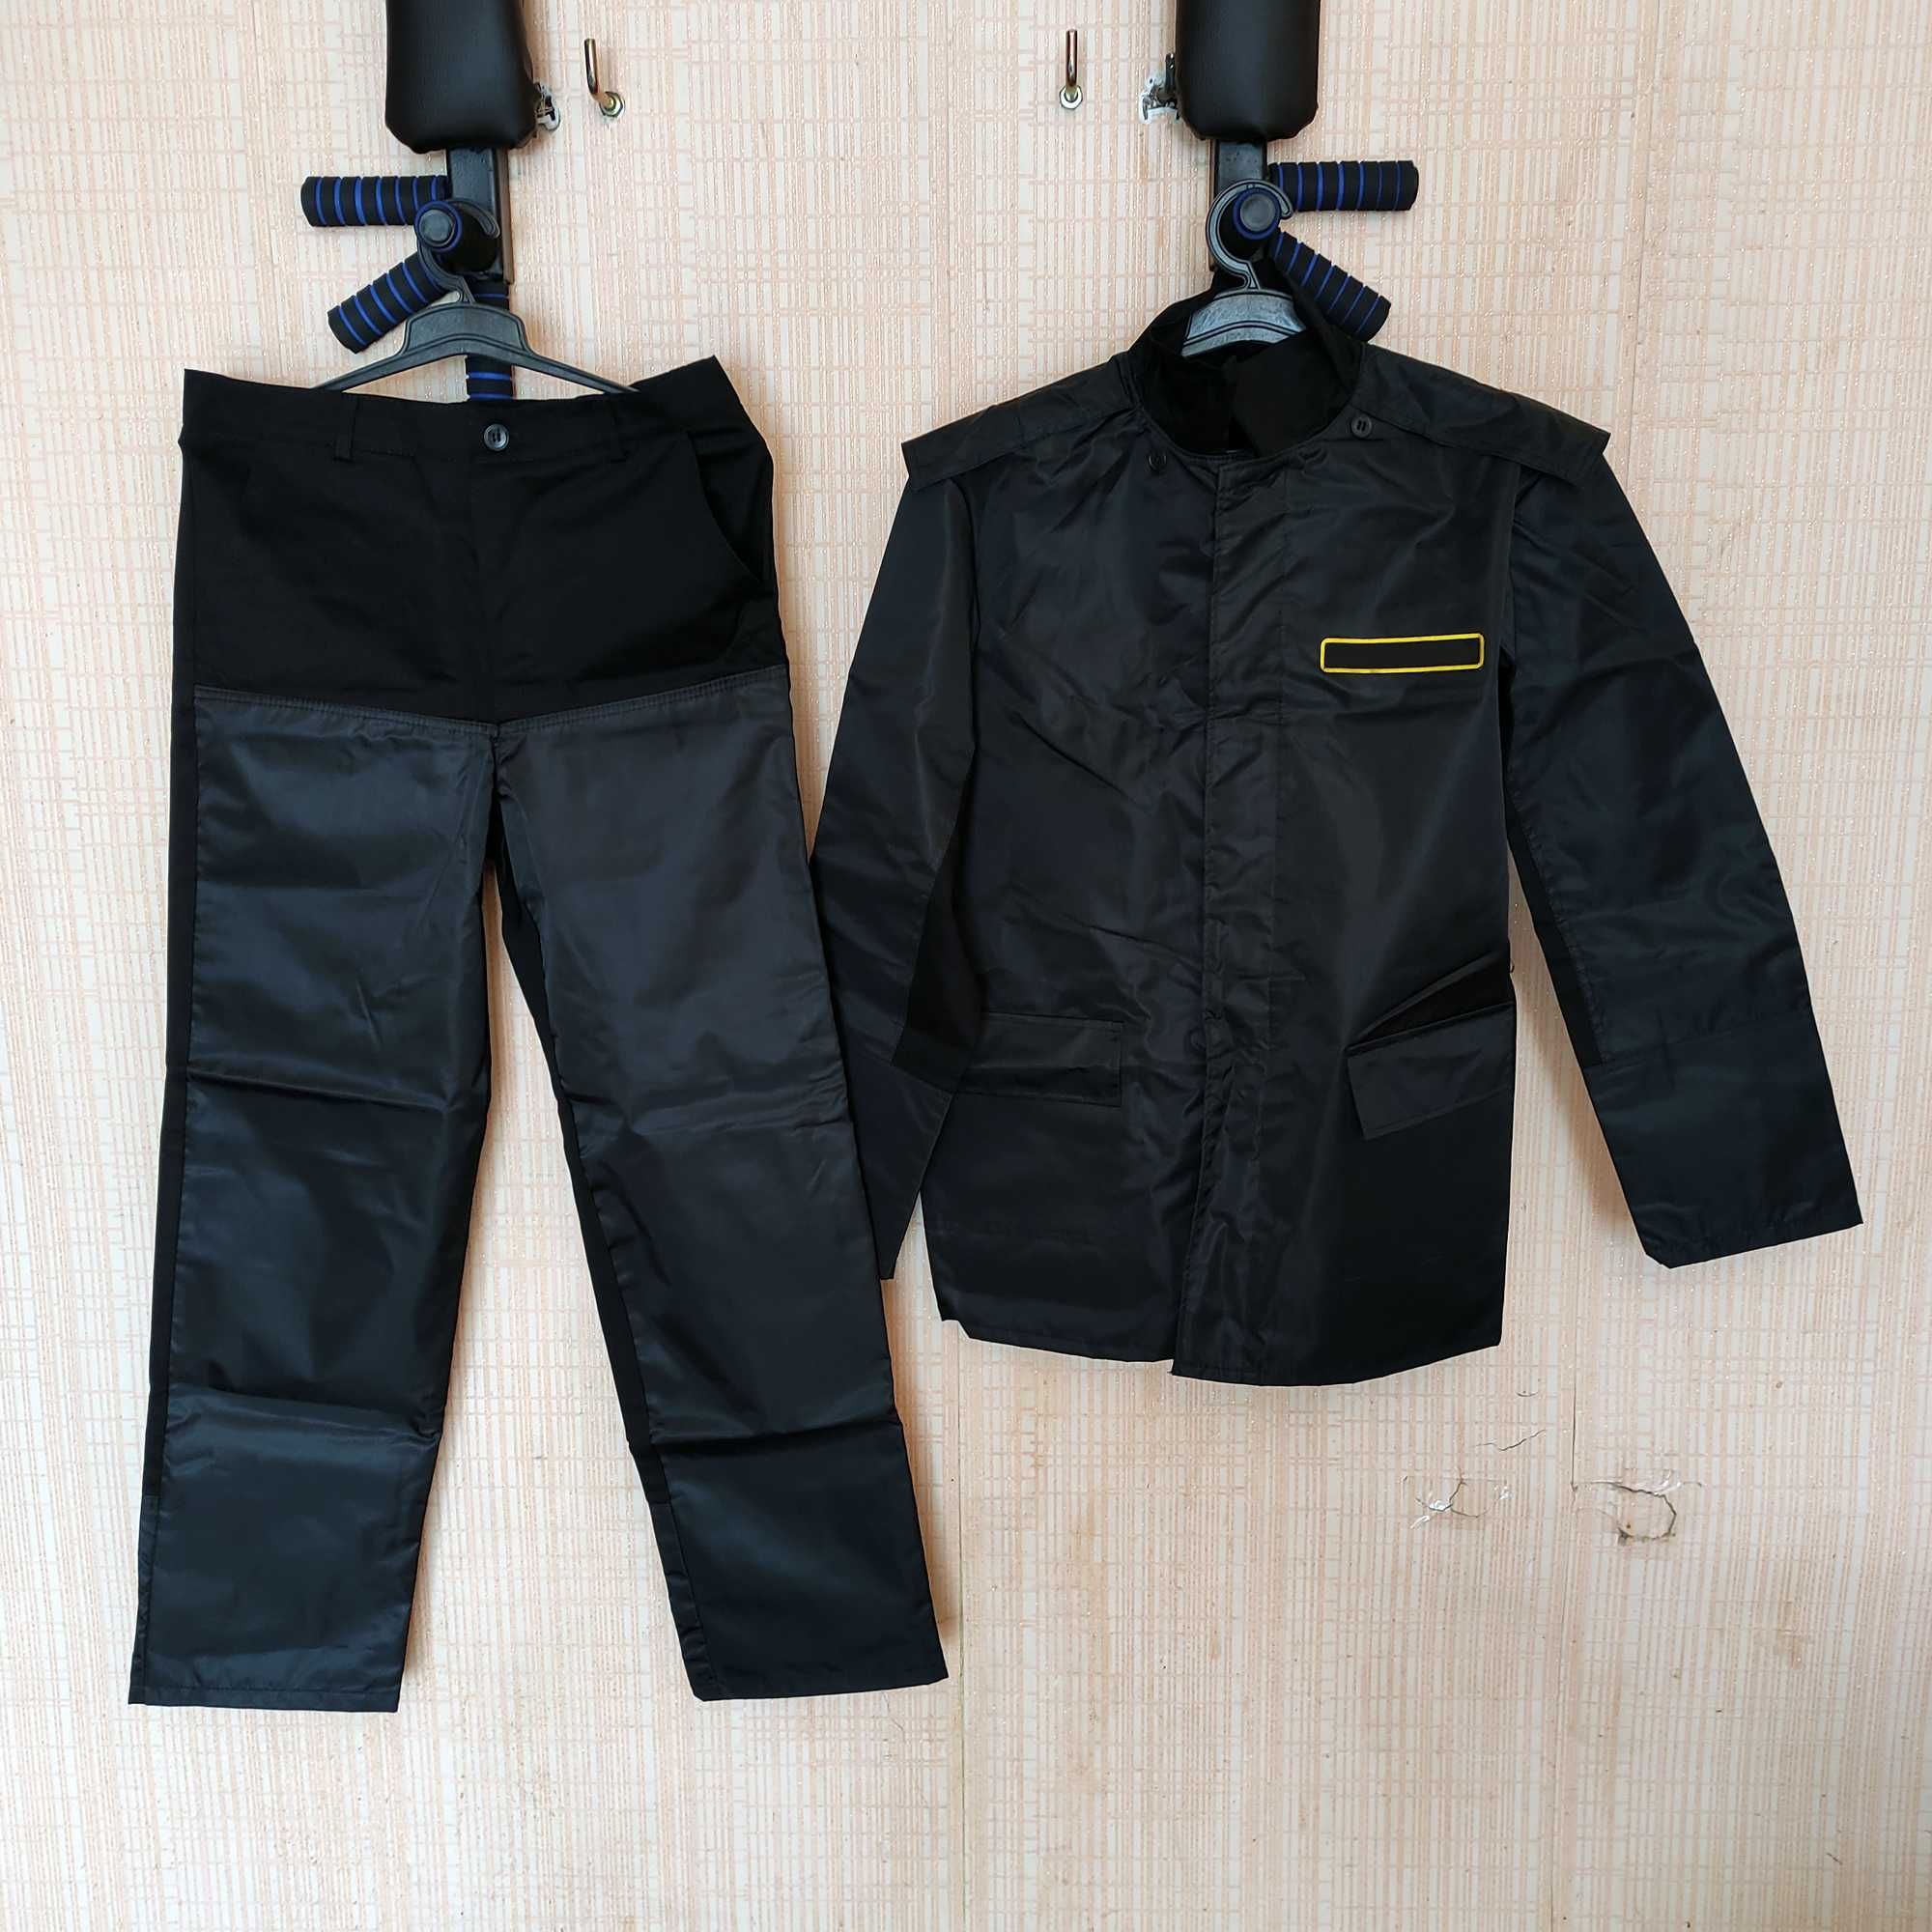 НОВИЙ Костюм робочий, спецодяг, роба (брюки та куртка) розмір 48-50